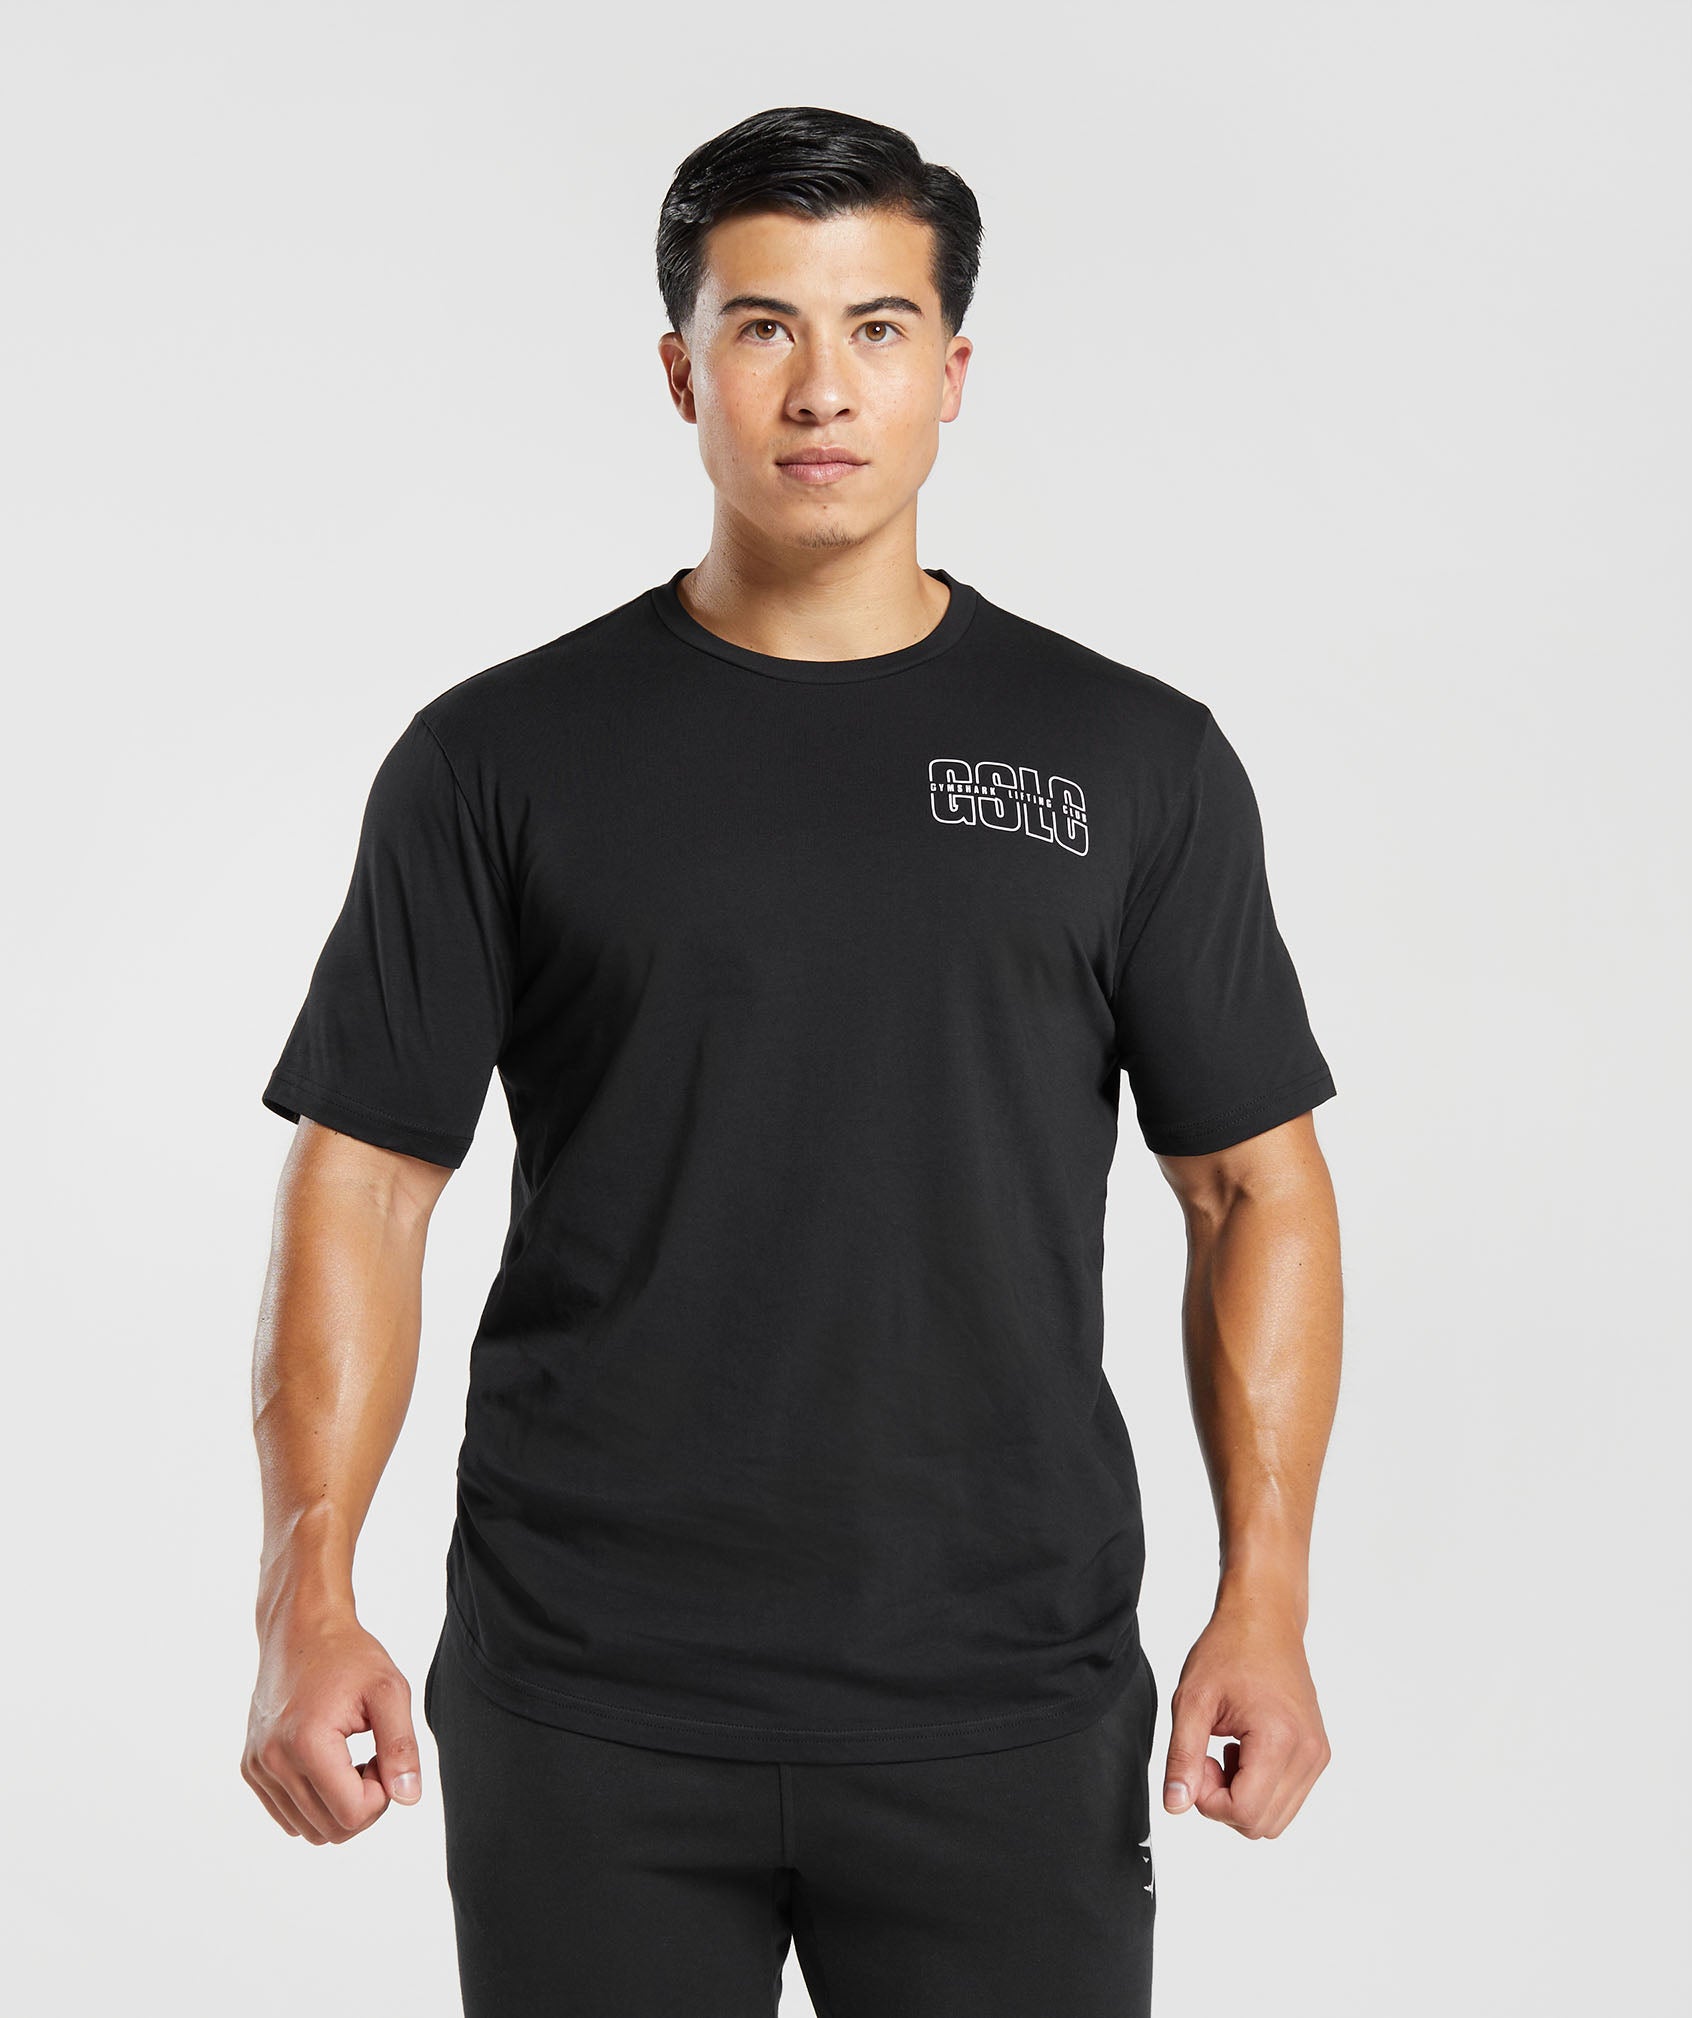 Lifting Club T-Shirt in Black - view 1